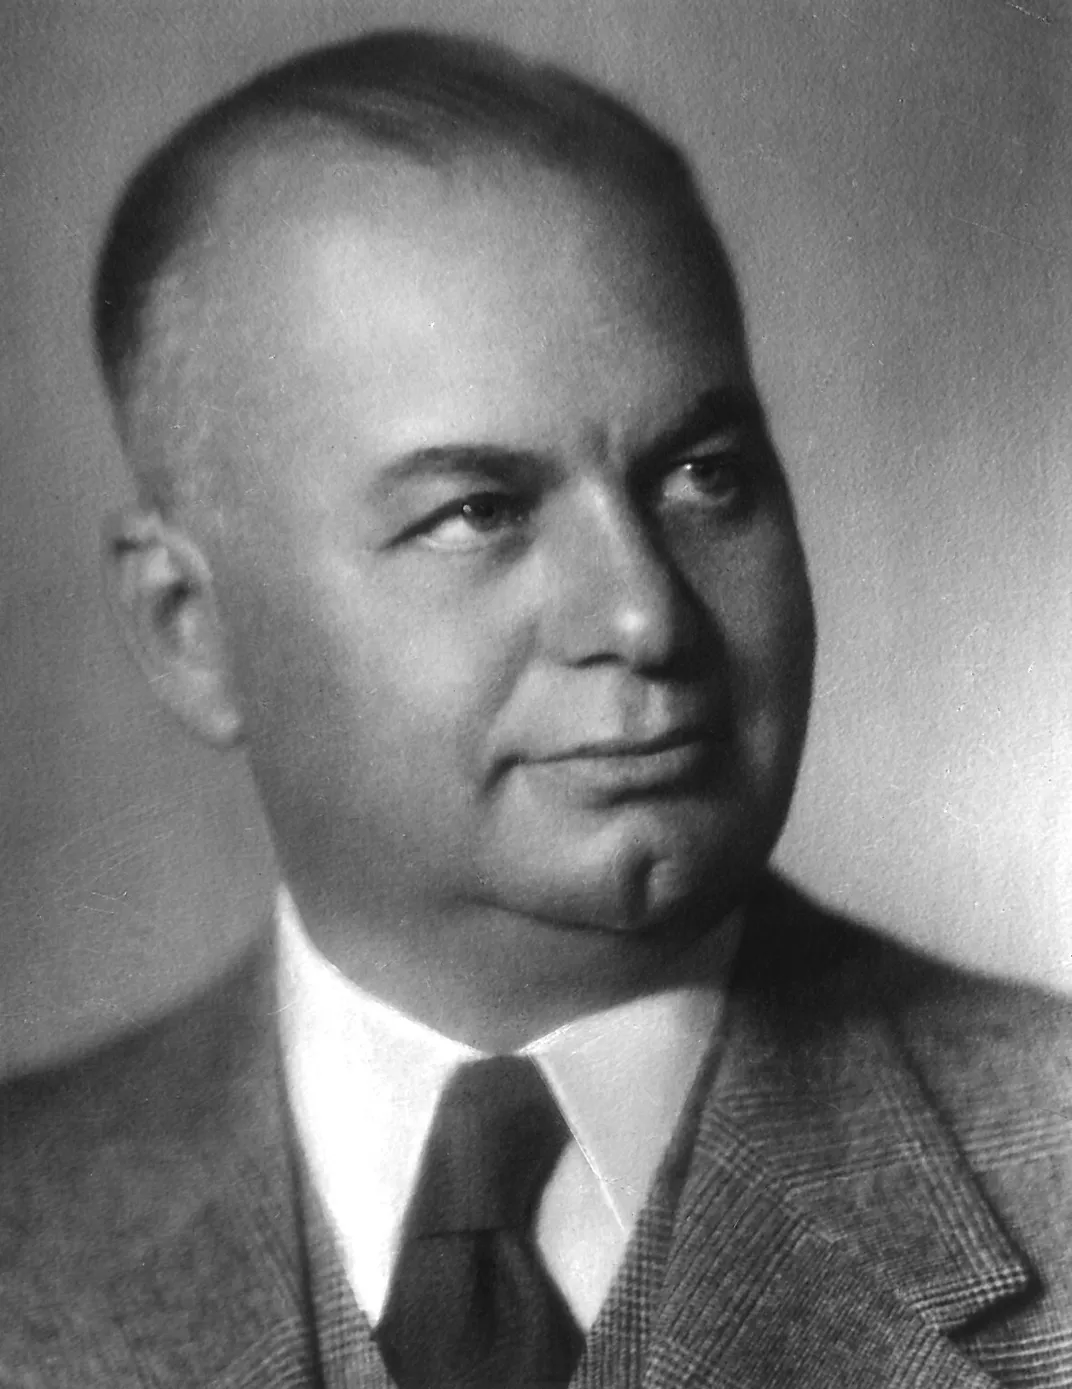 Hans Riegel Sr., founder of Haribo